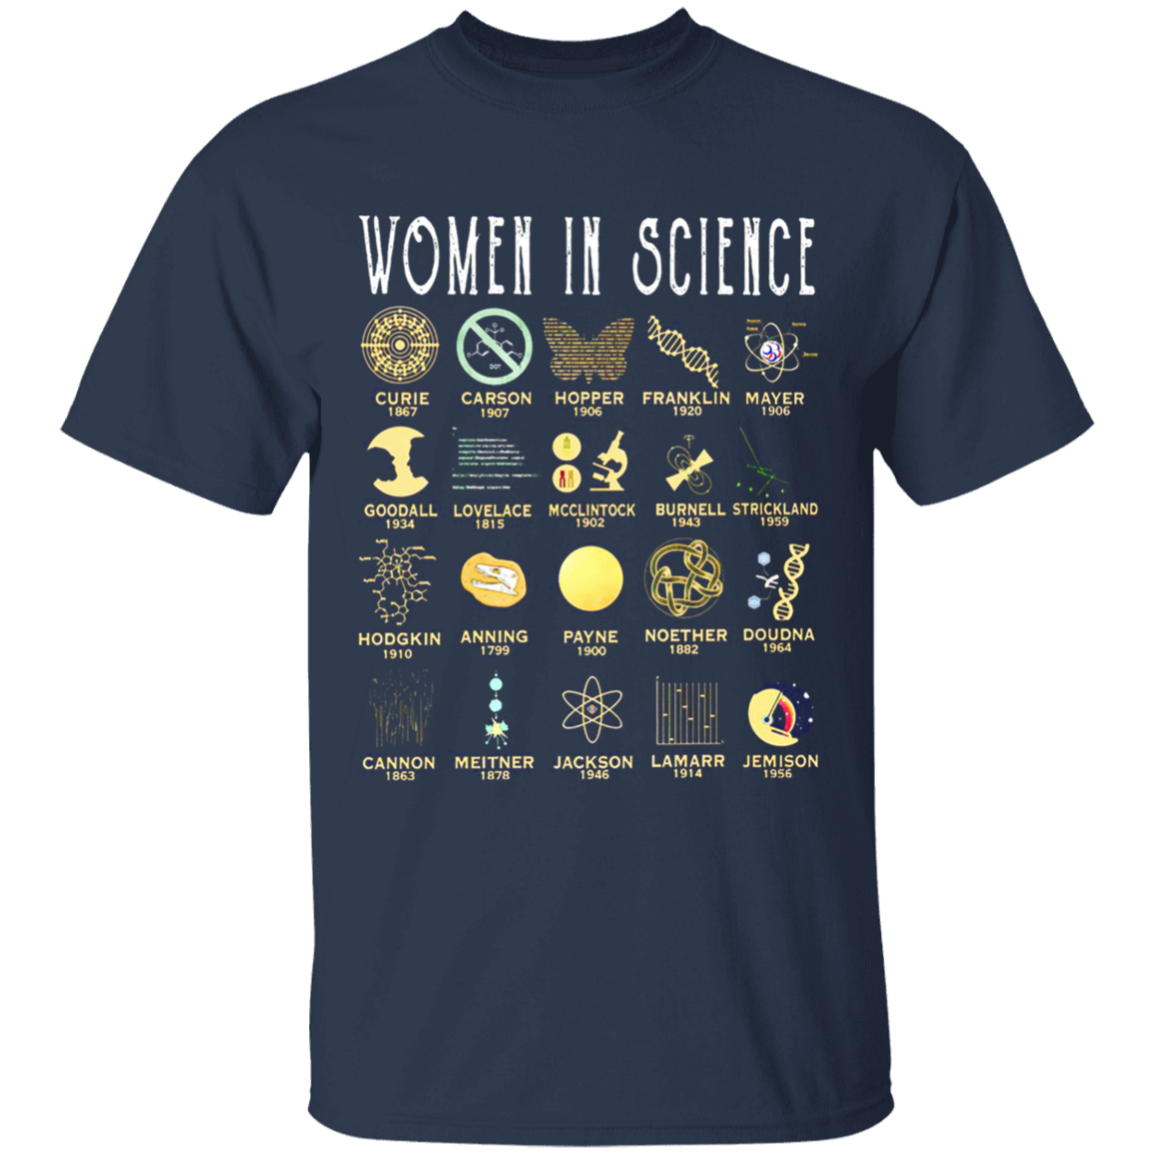 Women in Science Apparel